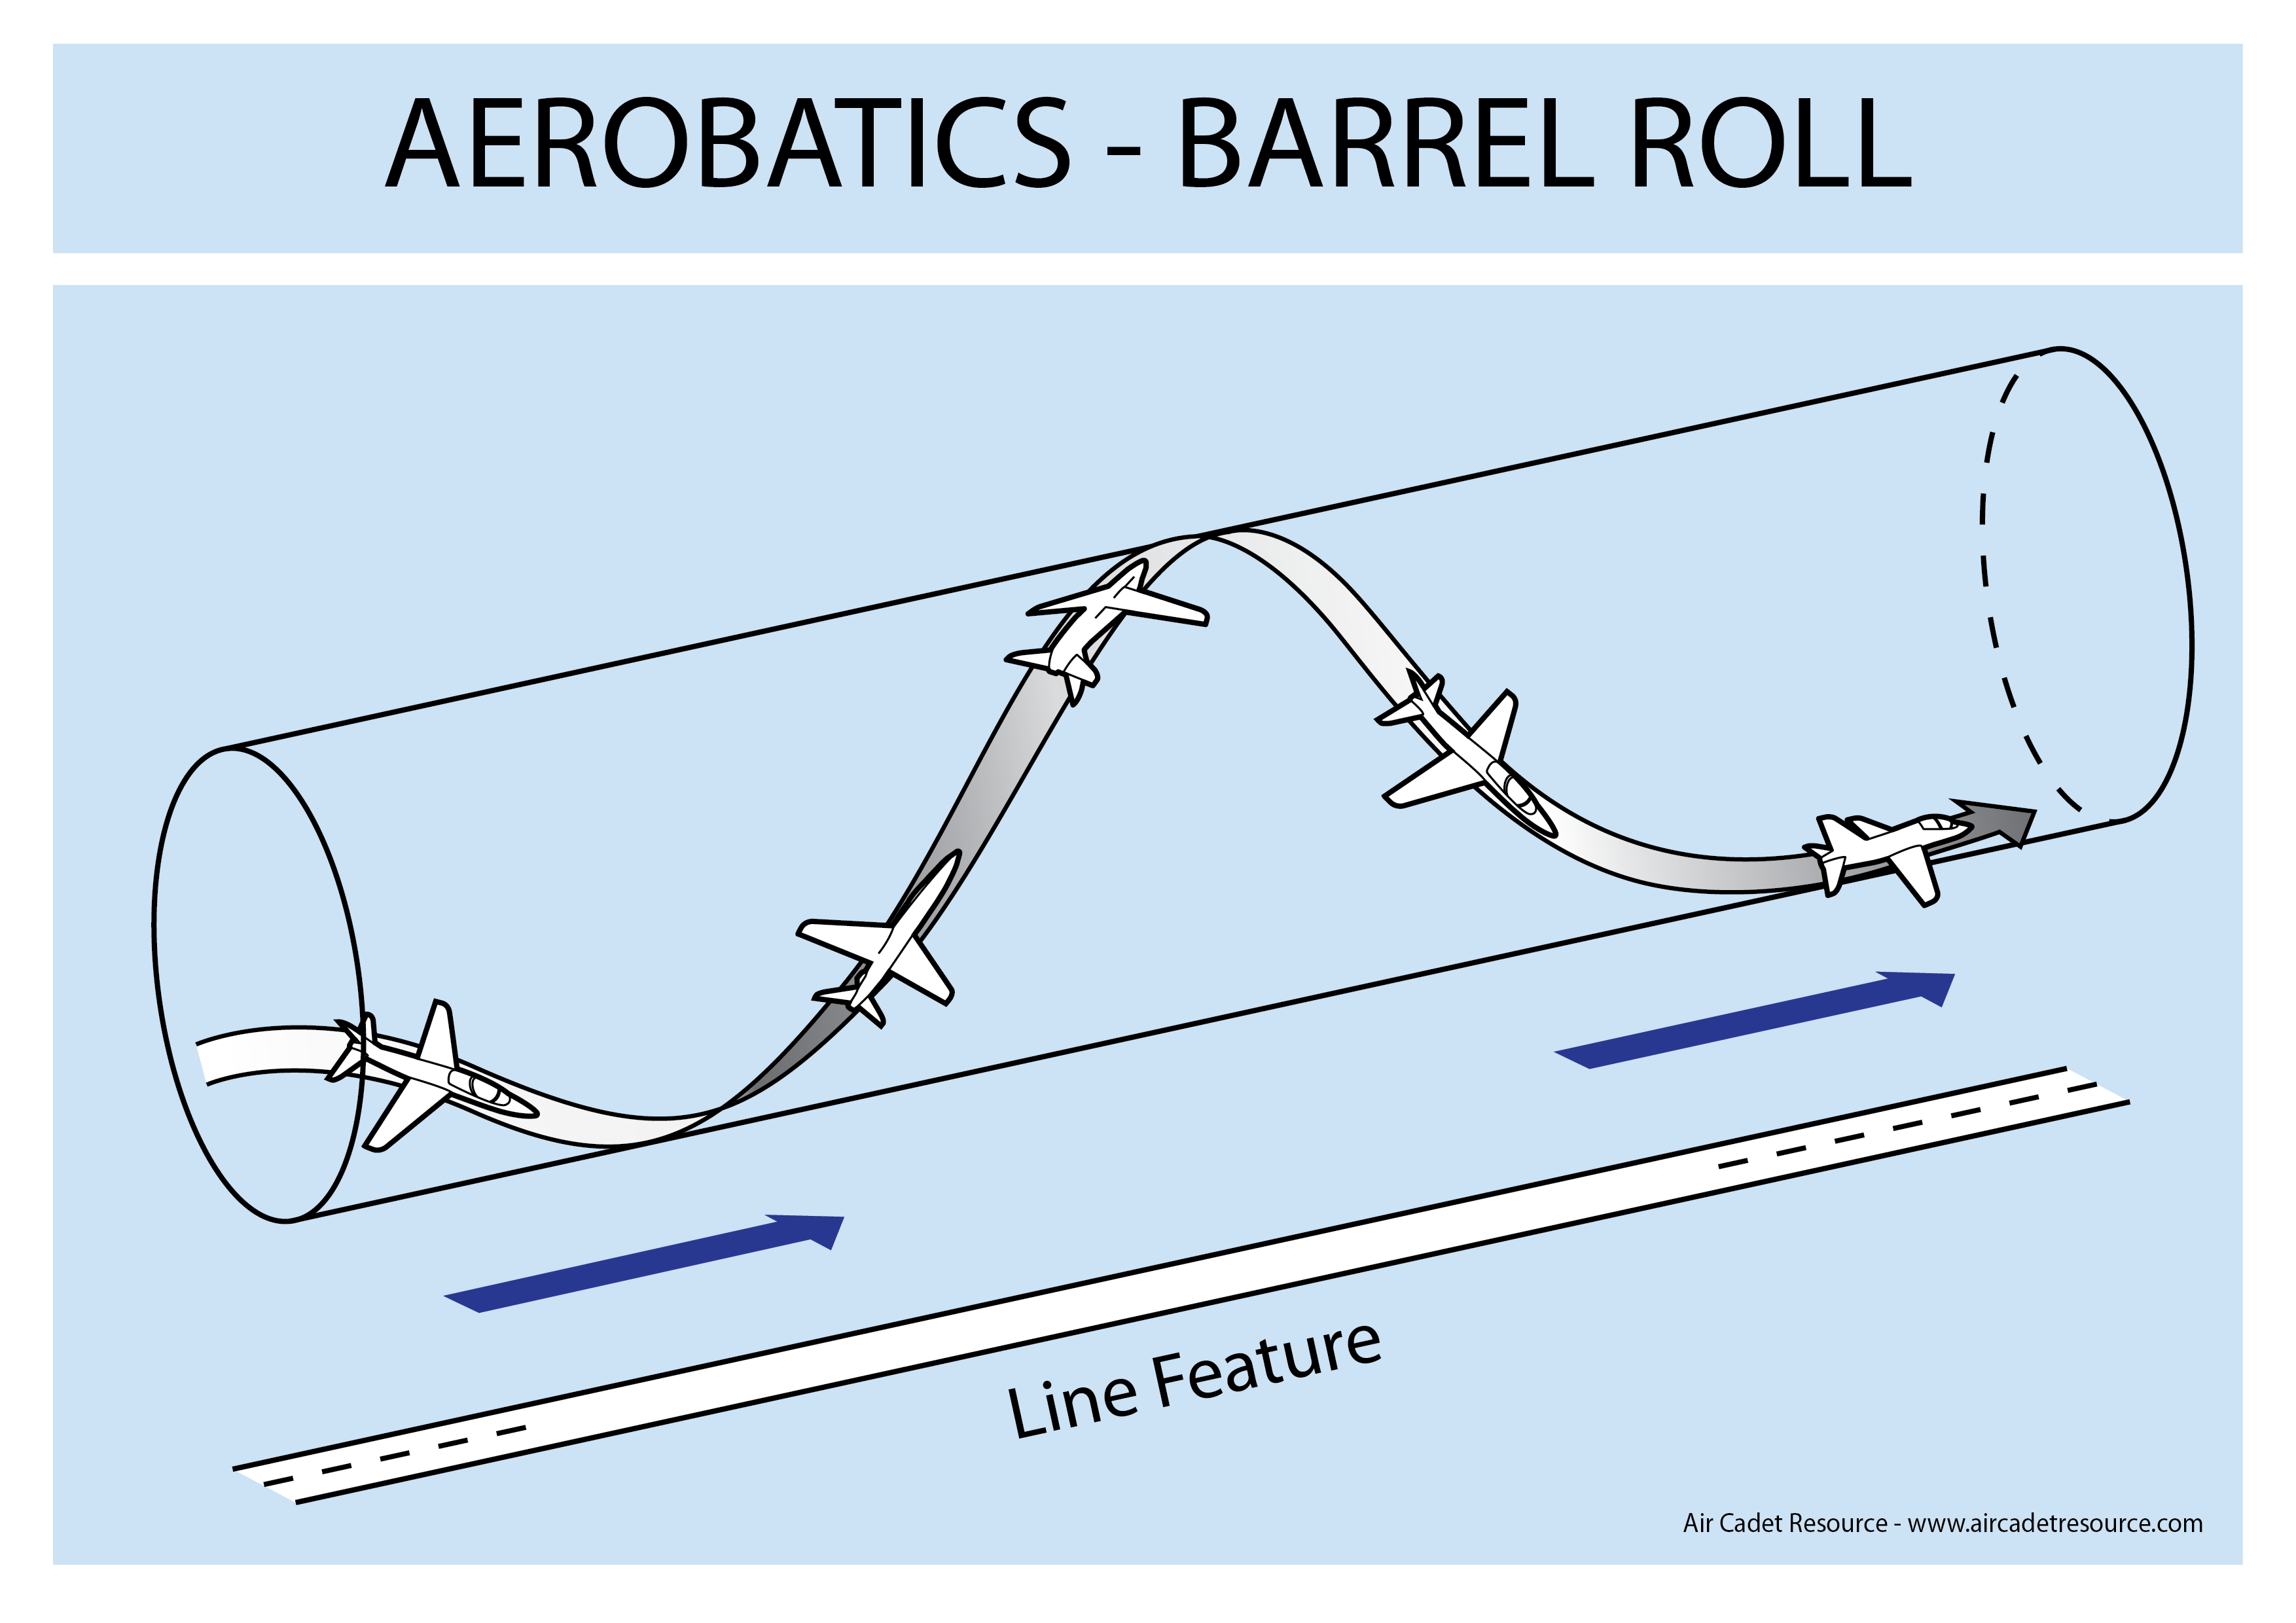 air combat maneuvers barrel roll